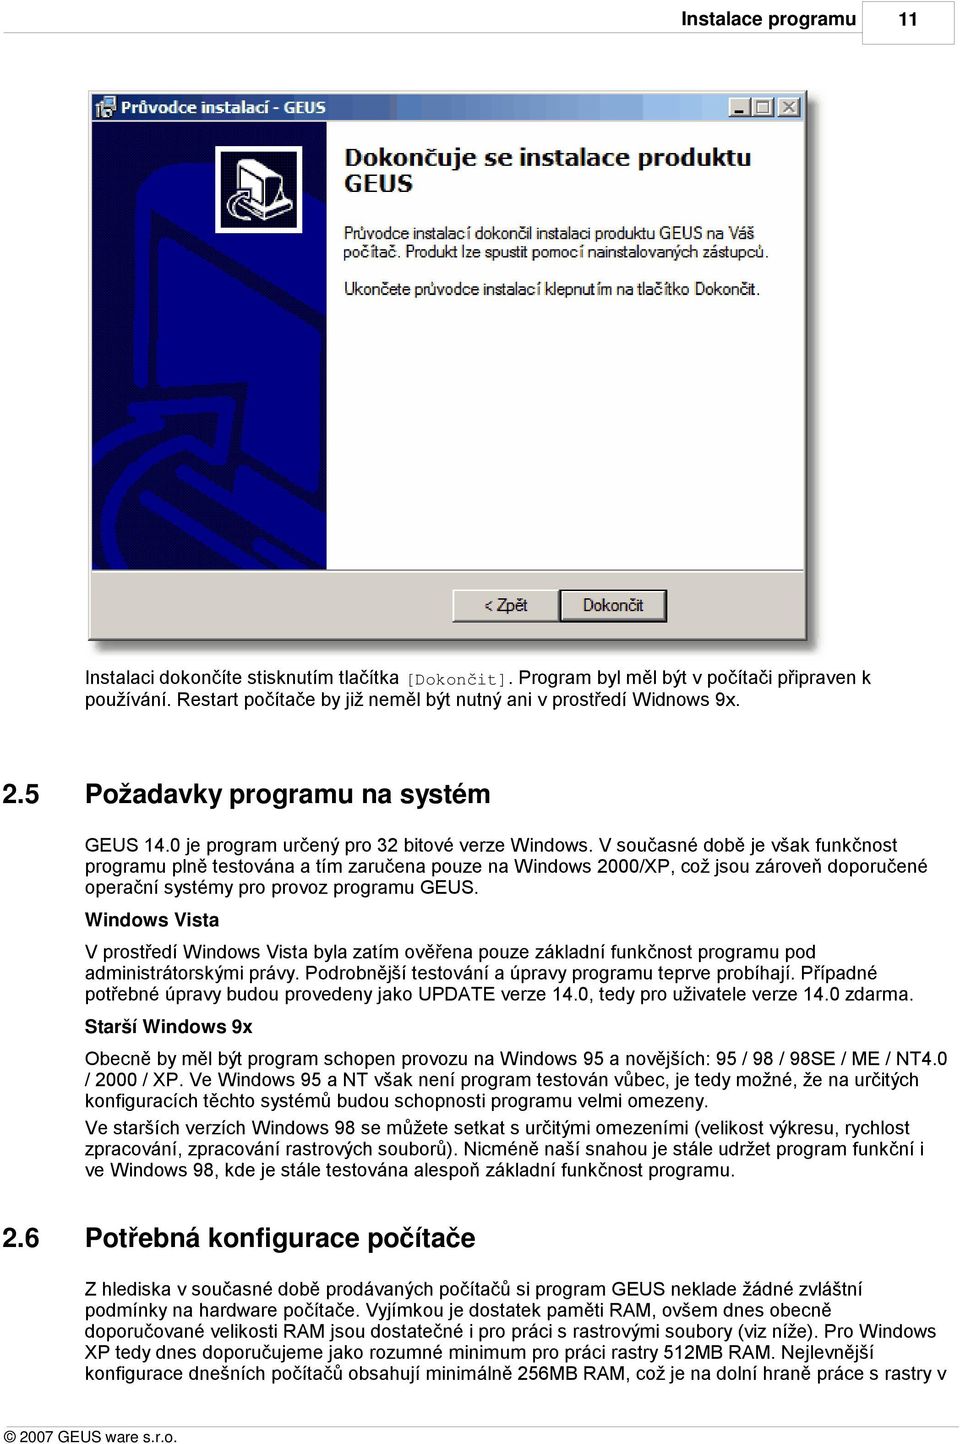 V současné době je však funkčnost programu plně testována a tím zaručena pouze na Windows 2000/XP, což jsou zároveň doporučené operační systémy pro provoz programu GEUS.